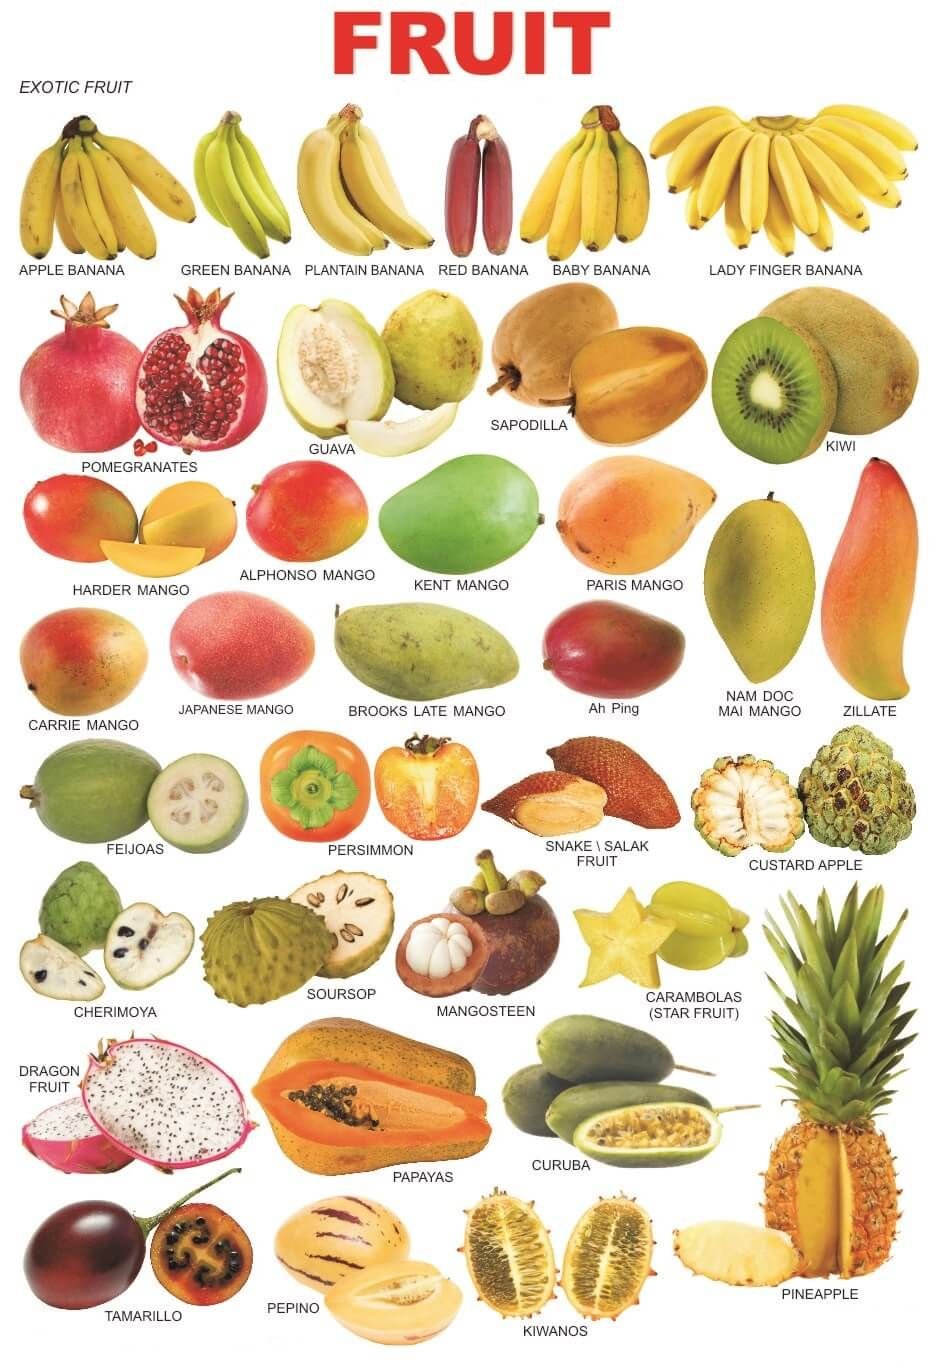 Экзотические фрукты